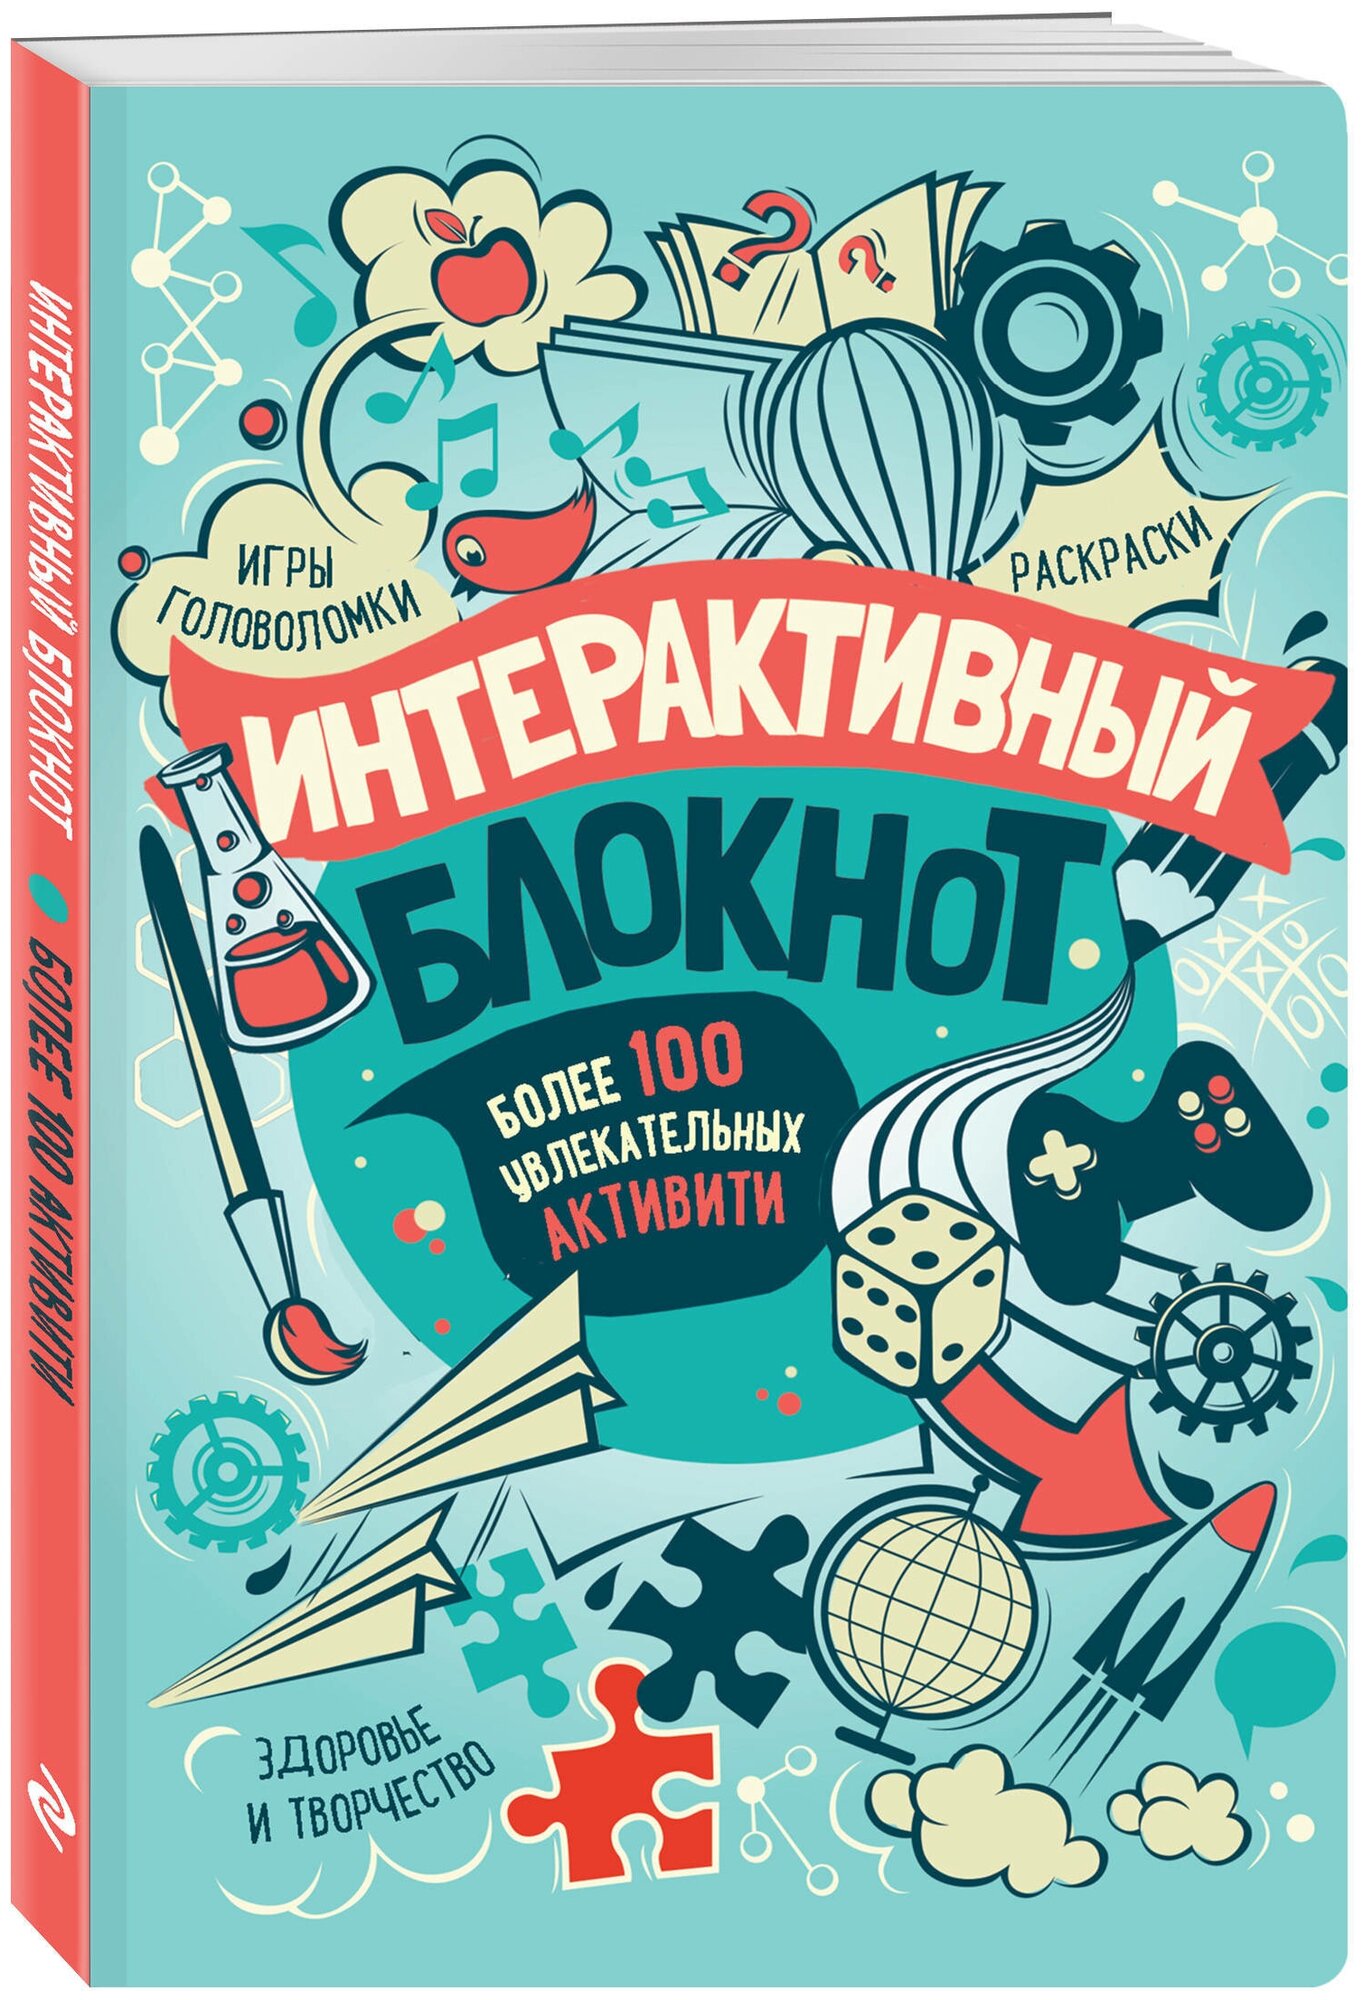 Интерактивный блокнот. Более 100 увлекательных активити (мятная) — купить в интернет-магазине по низкой цене на Яндекс Маркете